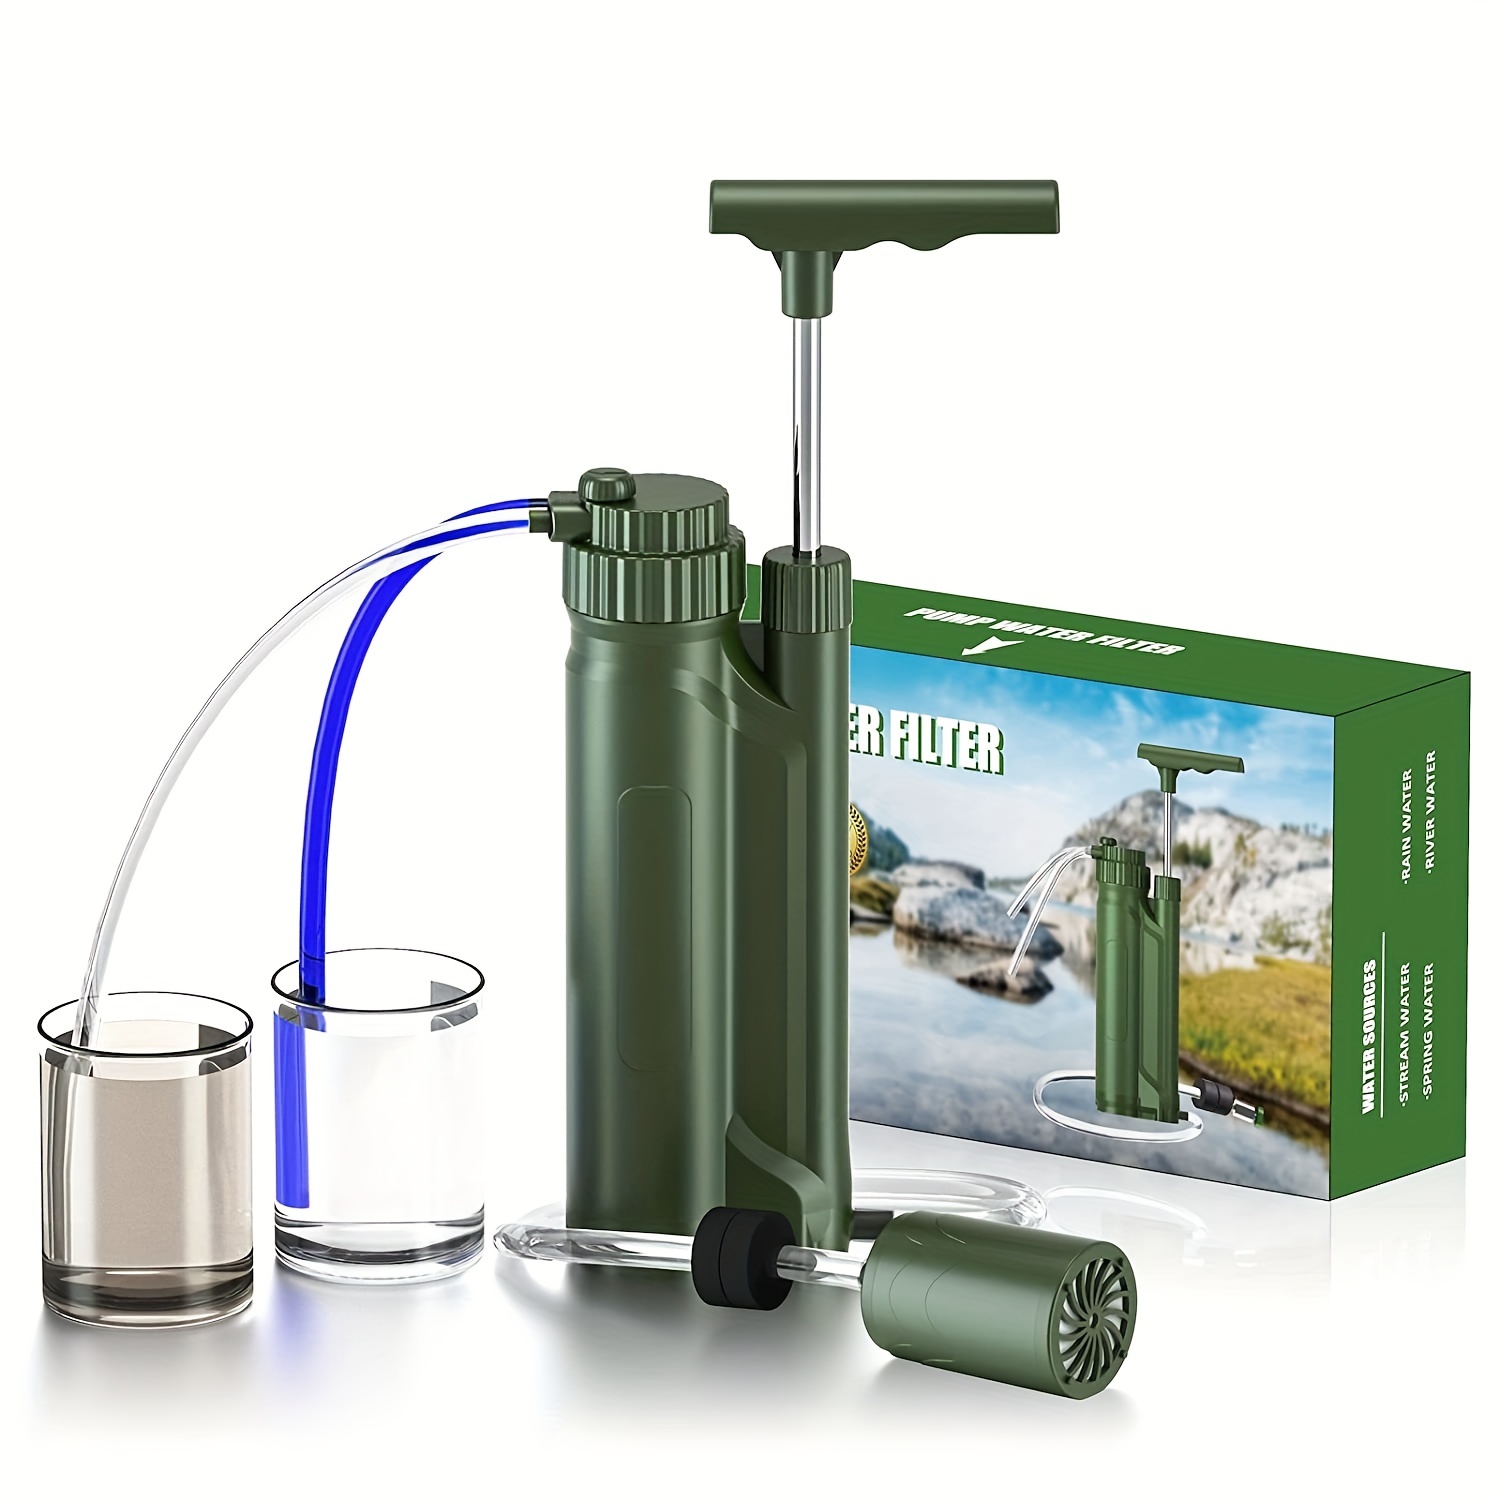 Outdoor Wasserreiniger Pumpe Überleben Wasserfilter Camping Reise Tragbare  Not-Handpumpe Filter Wasserreiniger Filter Pumpe